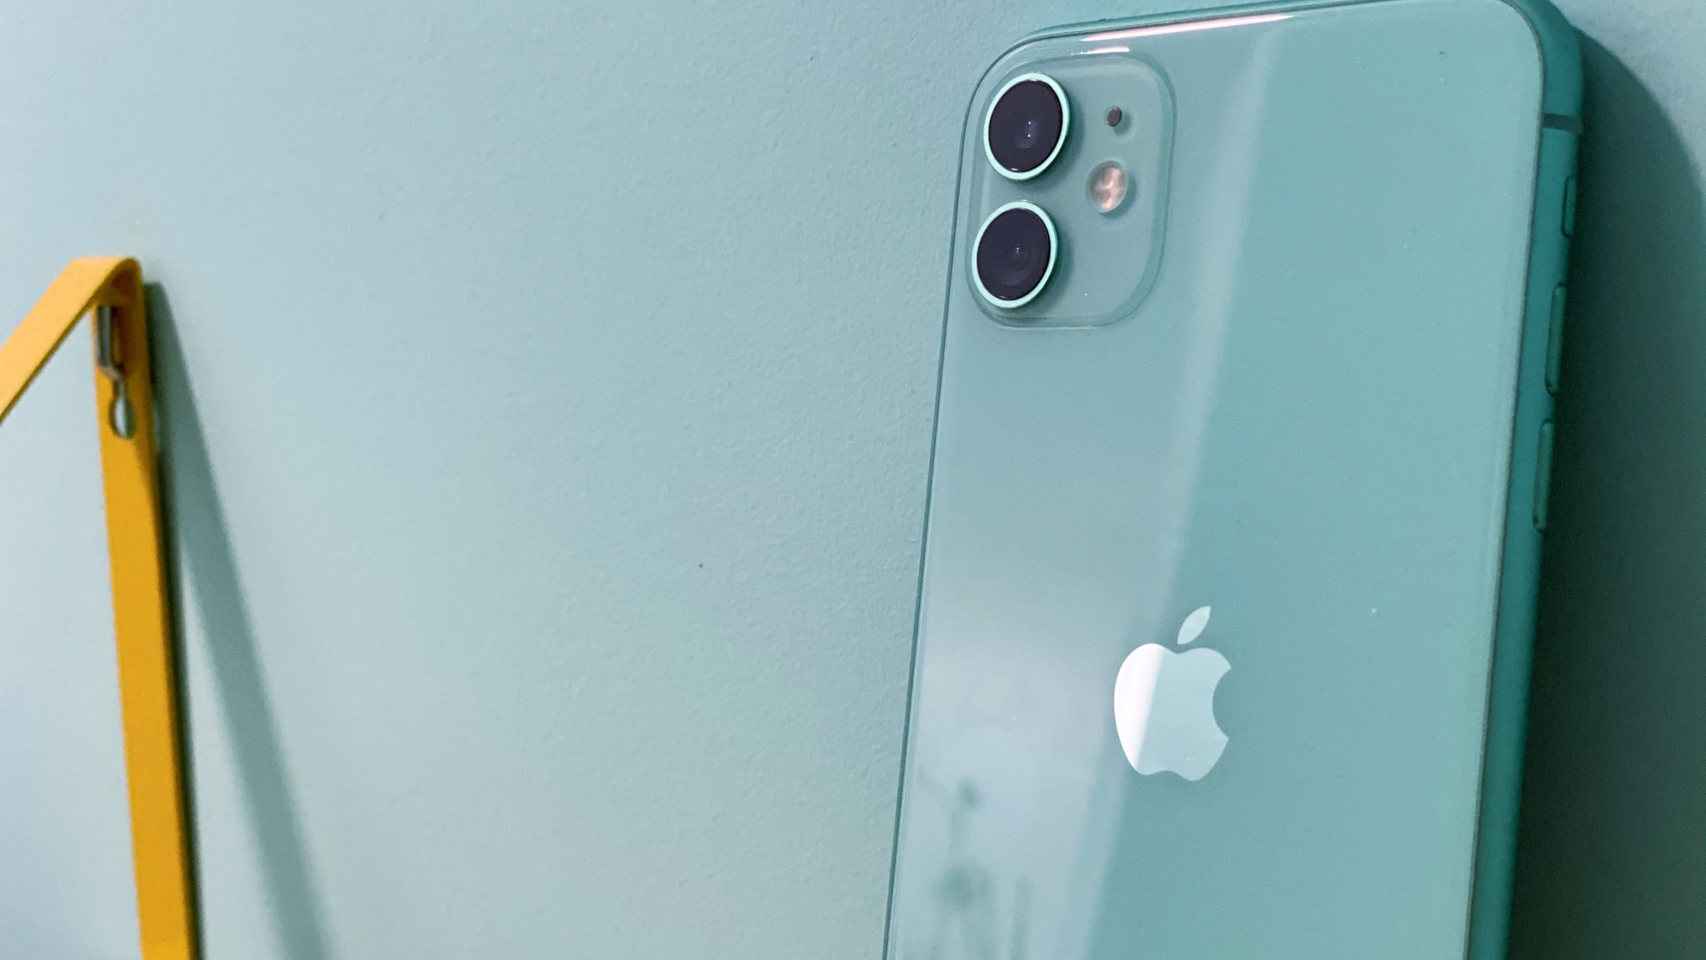 iPhone 11 Pro, probamos a fondo su cámara: versatilidad y realismo